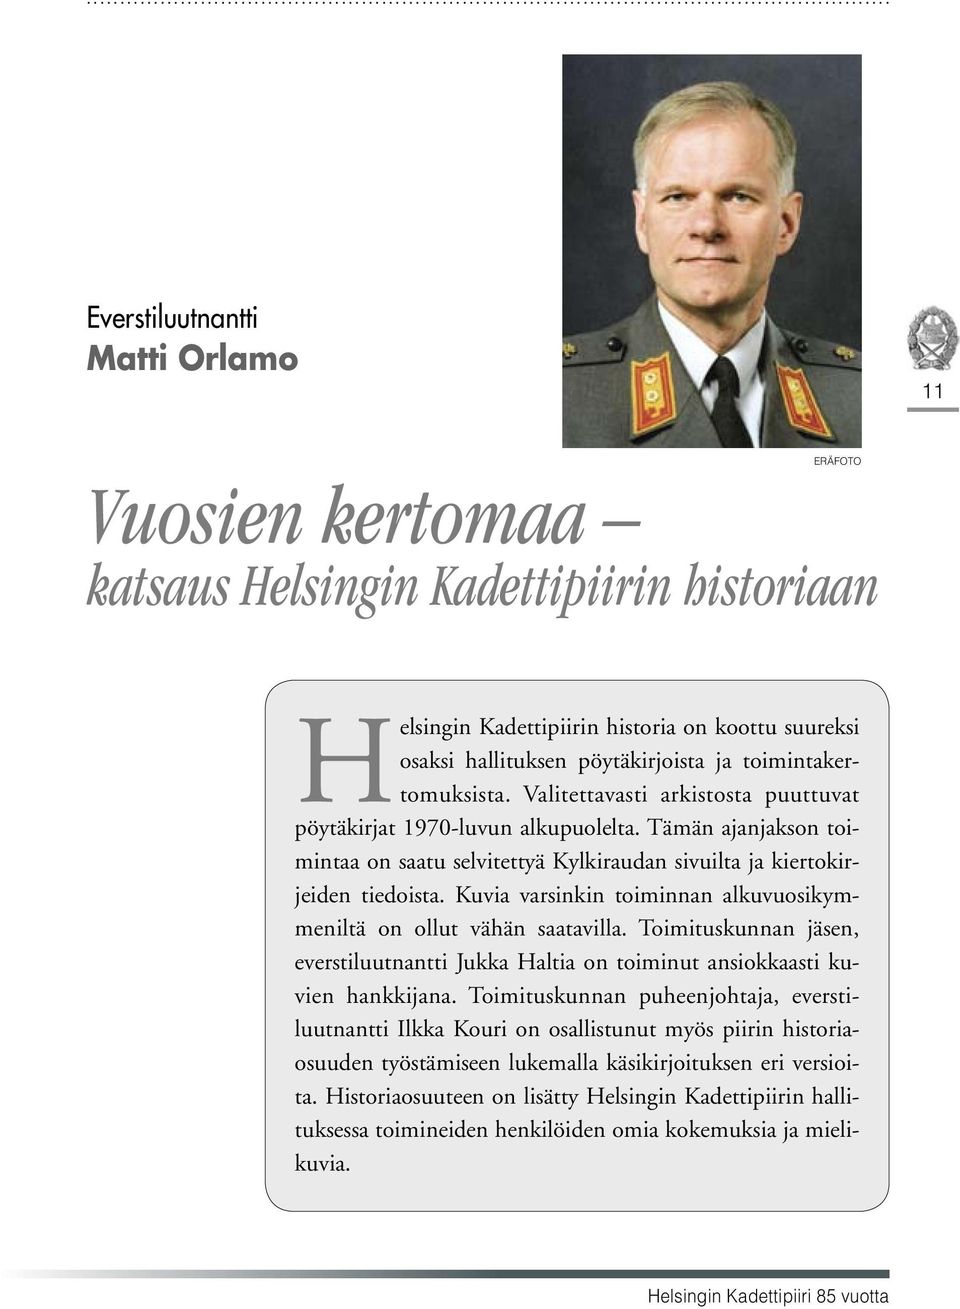 Kuvia varsinkin toiminnan alkuvuosikymmeniltä on ollut vähän saatavilla. Toimituskunnan jäsen, everstiluutnantti Jukka Haltia on toiminut ansiokkaasti kuvien hankkijana.